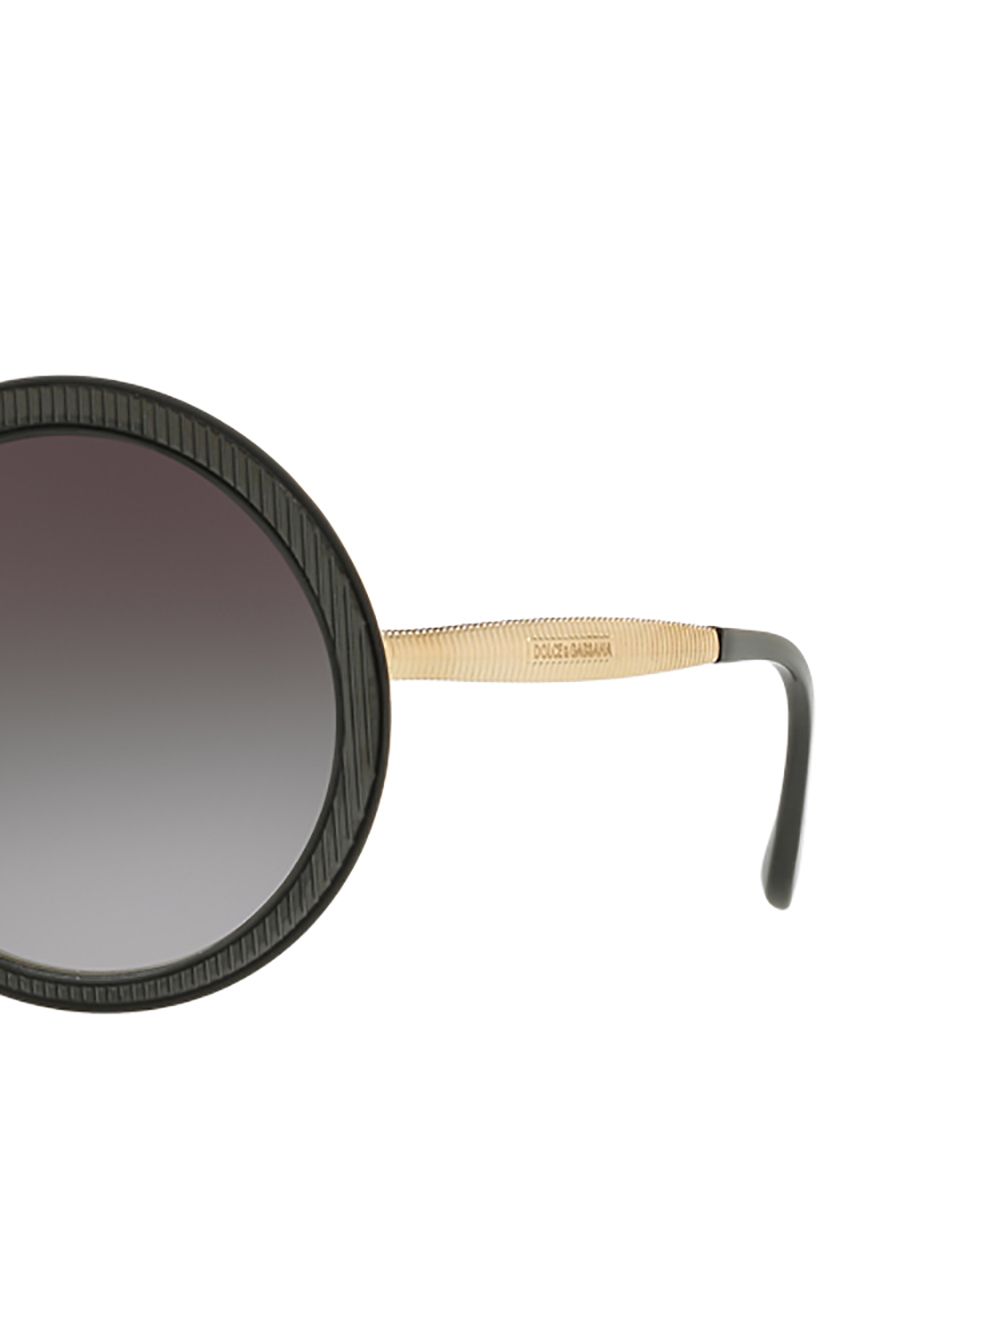 фото Dolce & Gabbana Eyewear солнцезащитные очки в круглой оправе